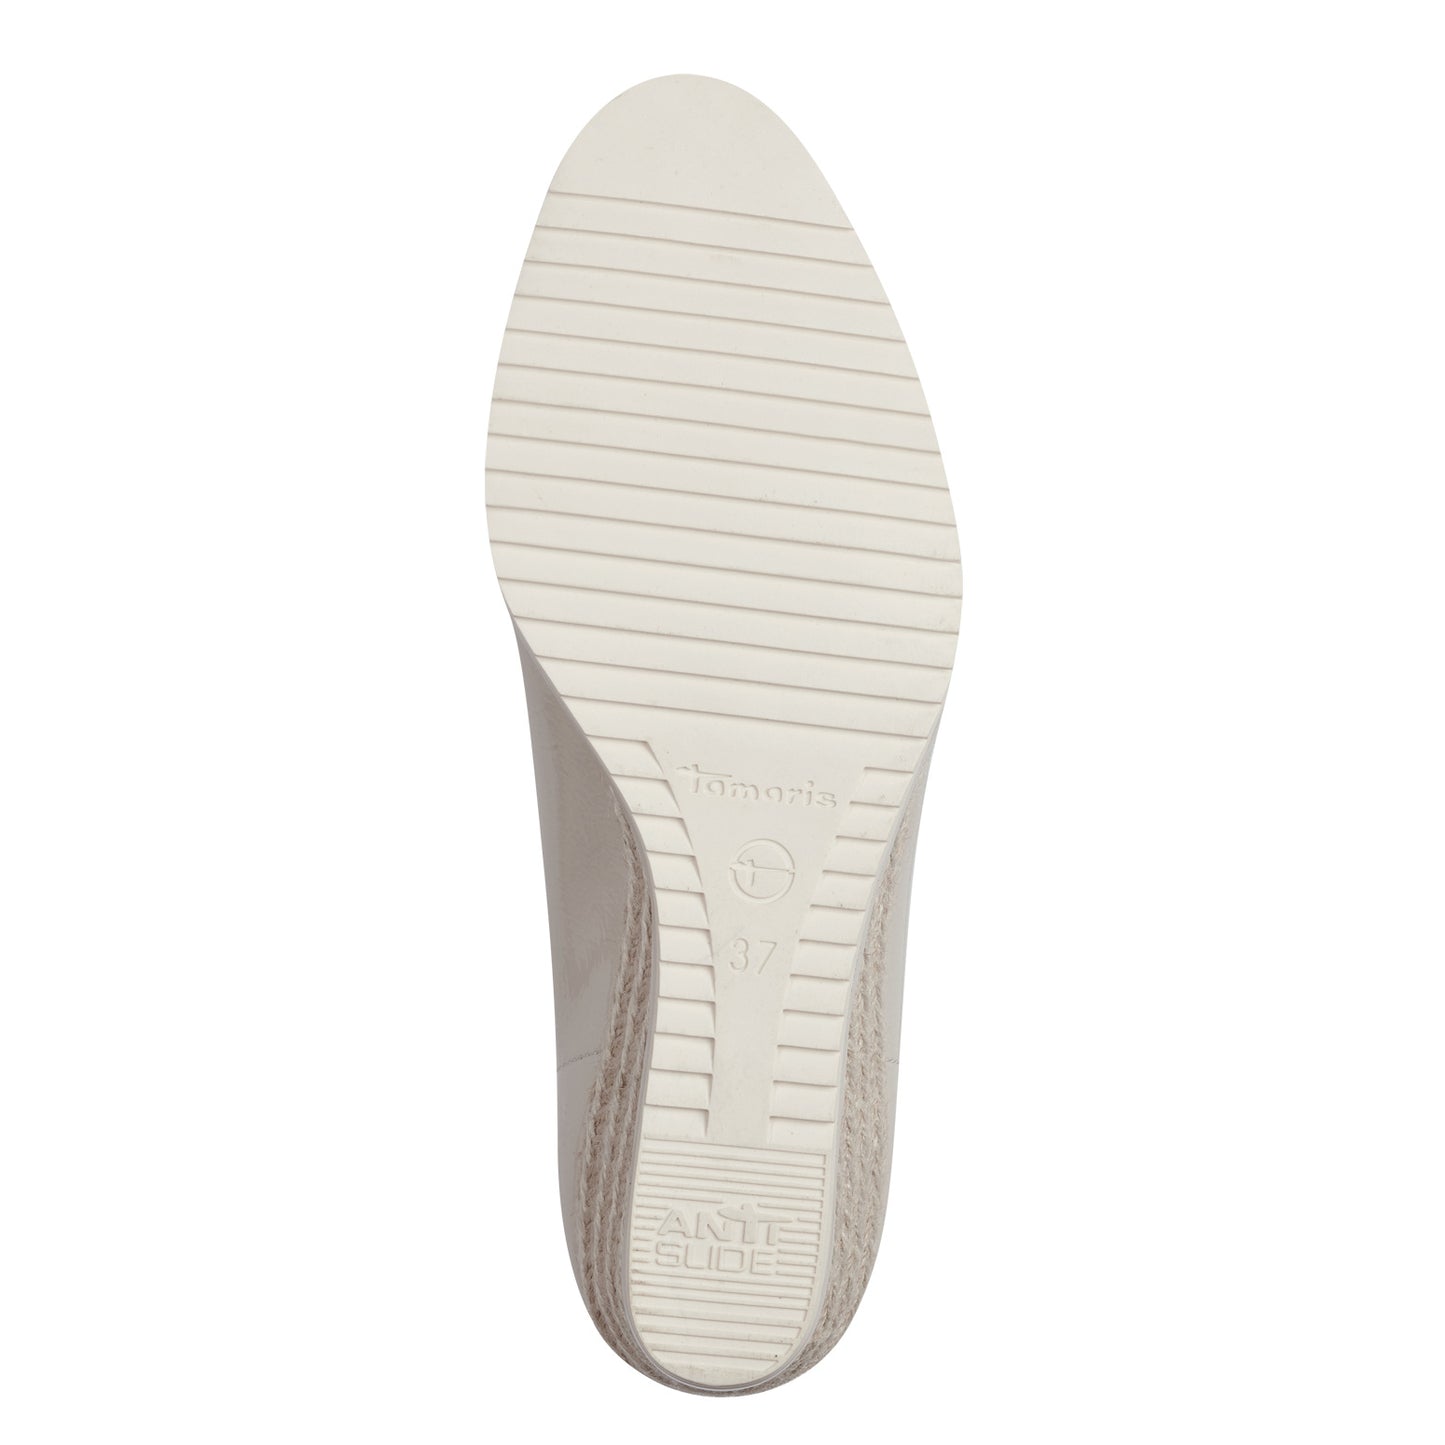 Tamaris - Ladies Shoes Wedge Beige (2108)